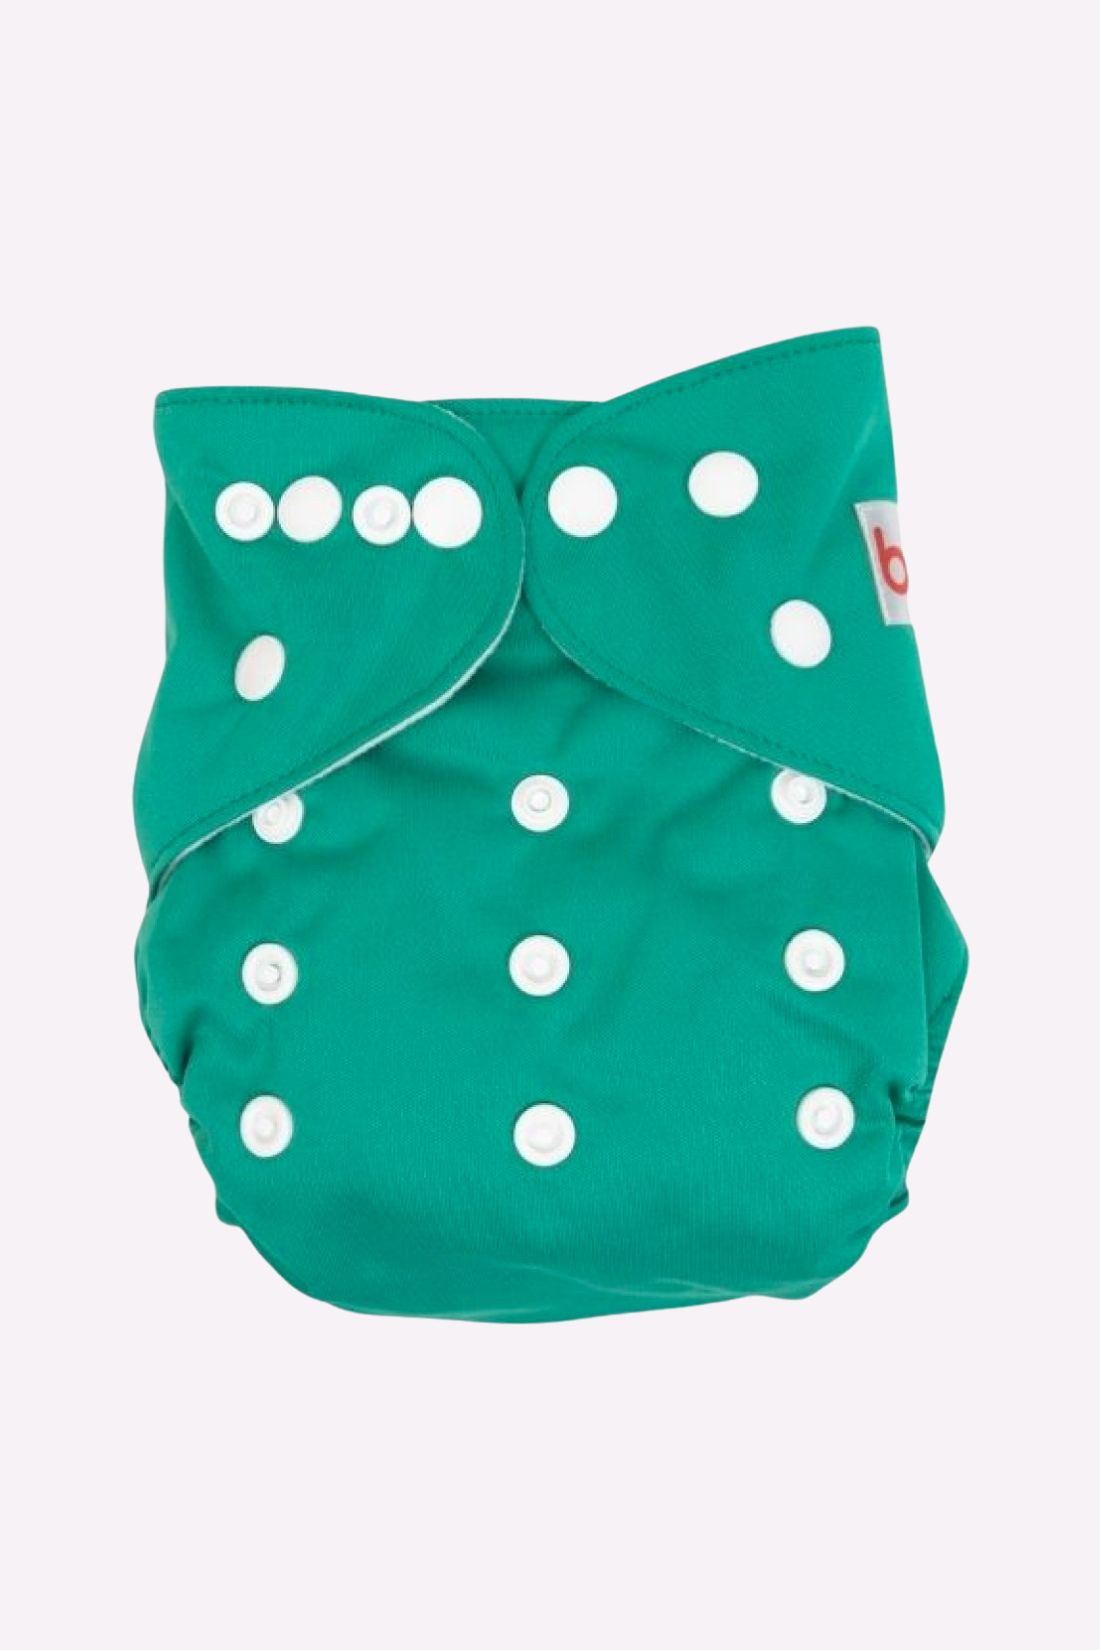 Plain Green Gear Cloth Diaper